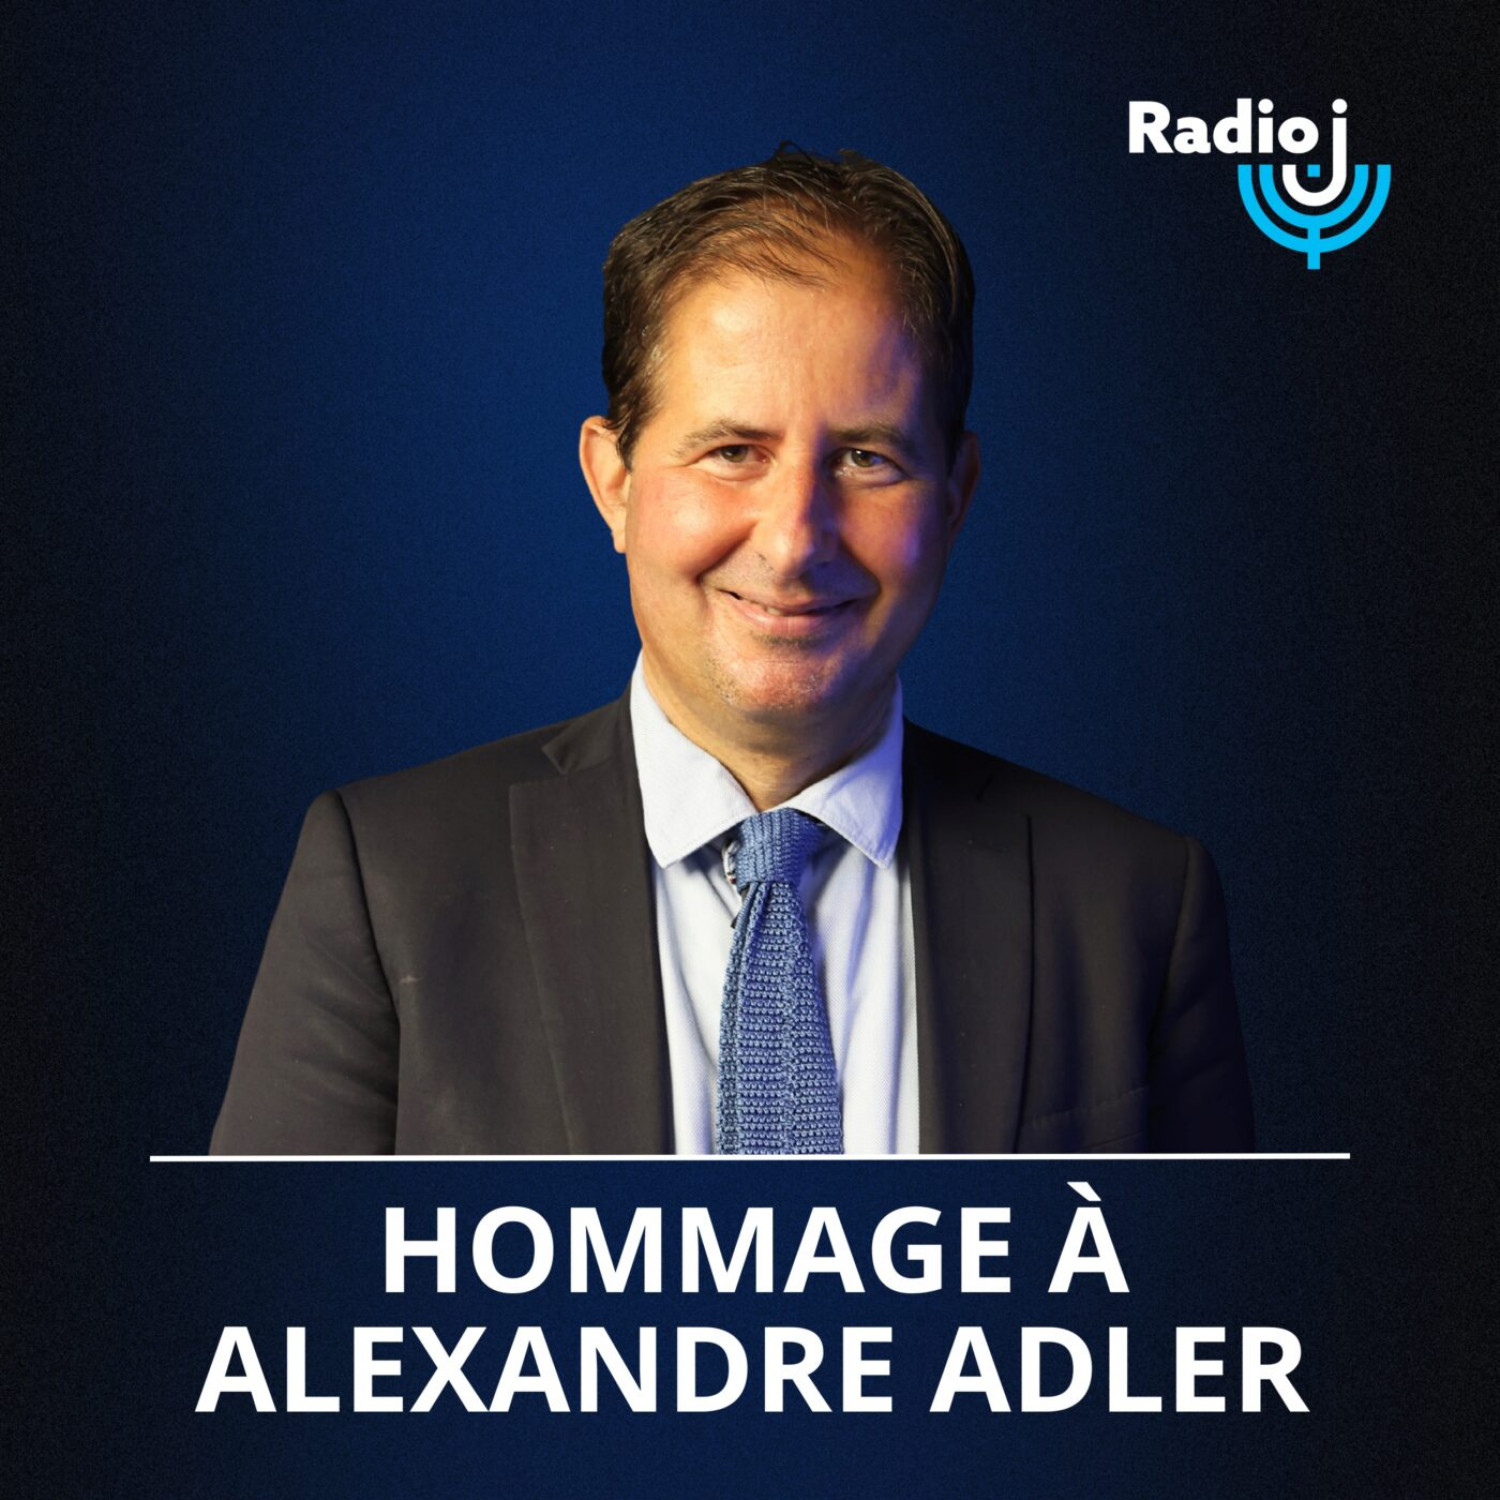 Émission spéciale, hommage à Alexandre Adler, présenté par Alexis Lacroix